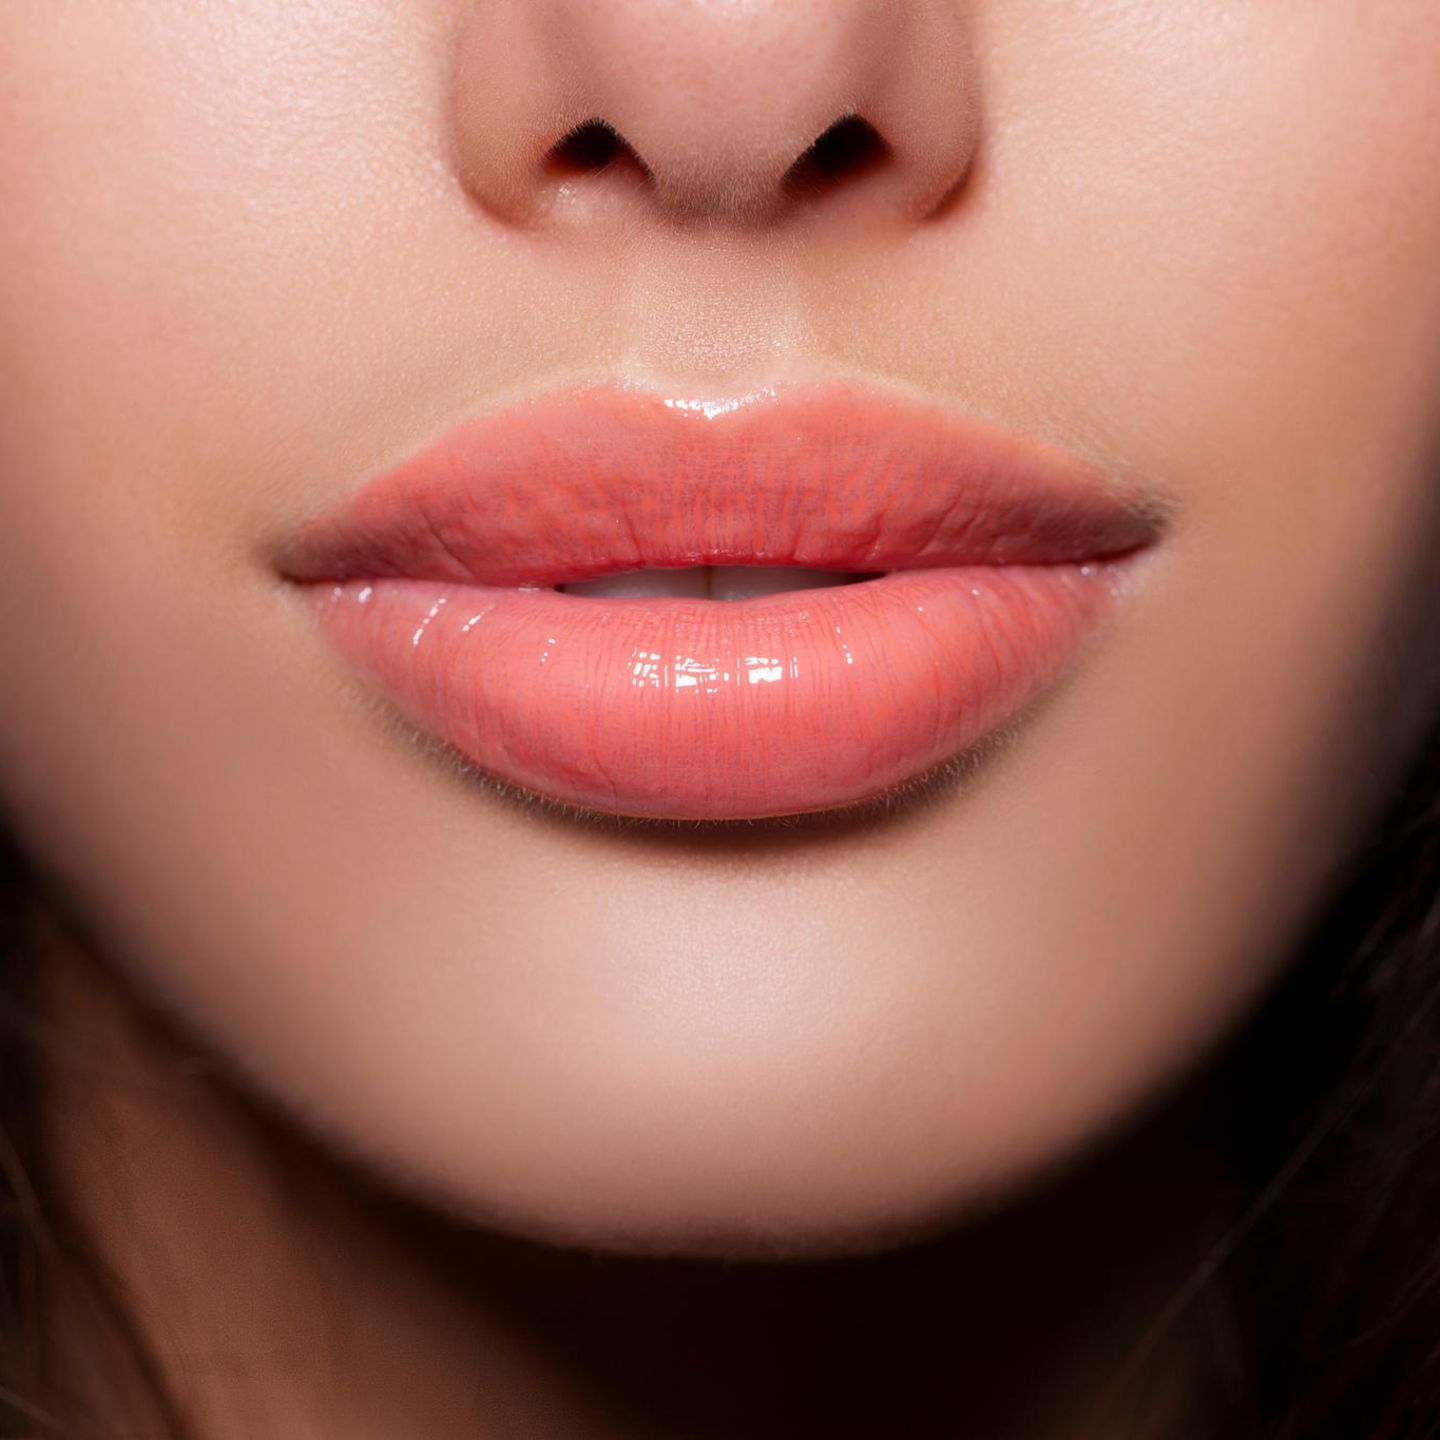 Lippen aufspritzen: Das solltest du vorher wissen!